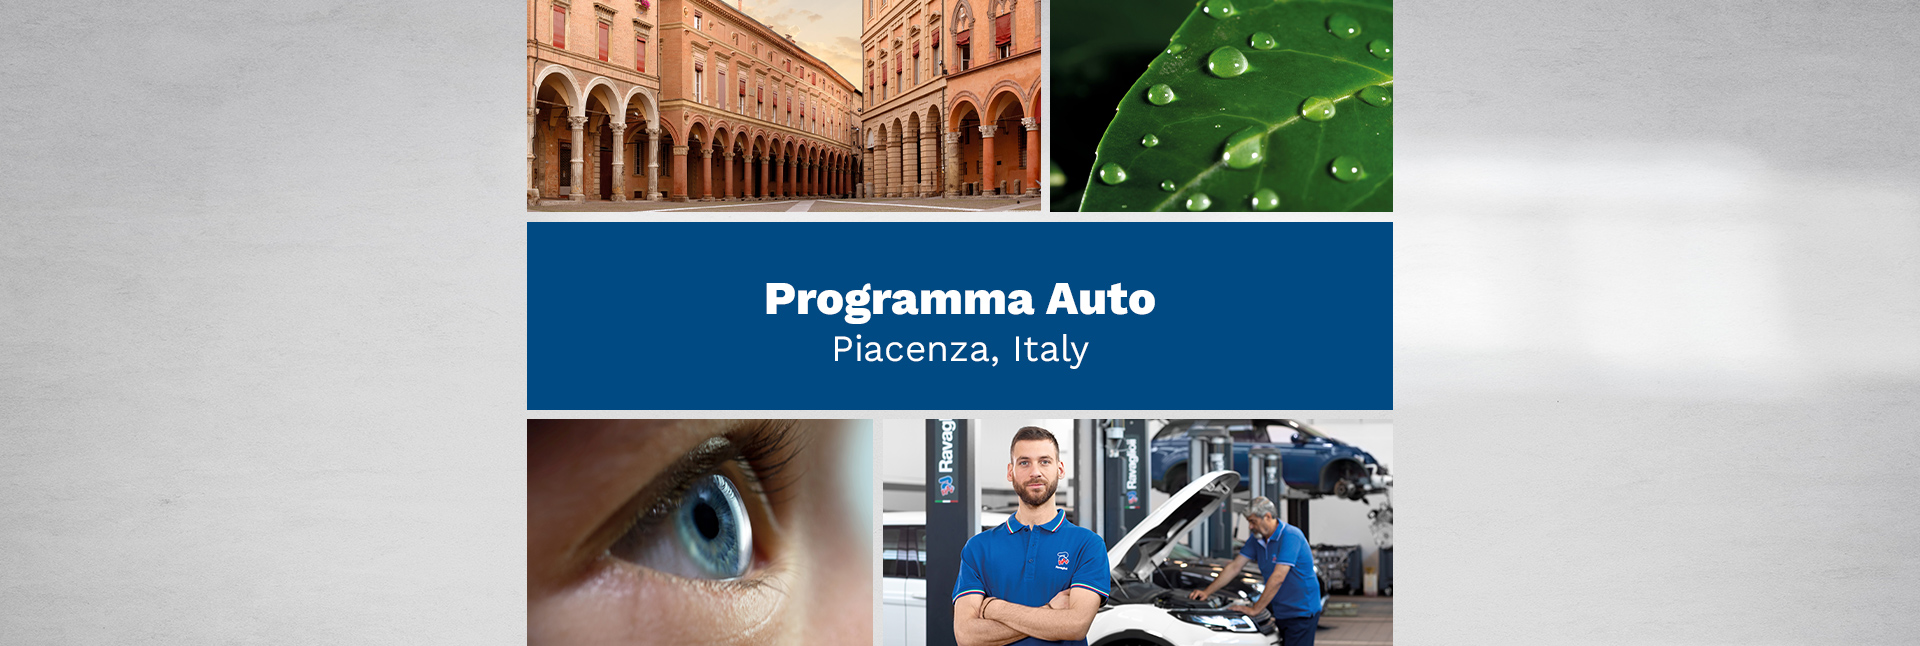 Programma Auto – Piacenza, Italy